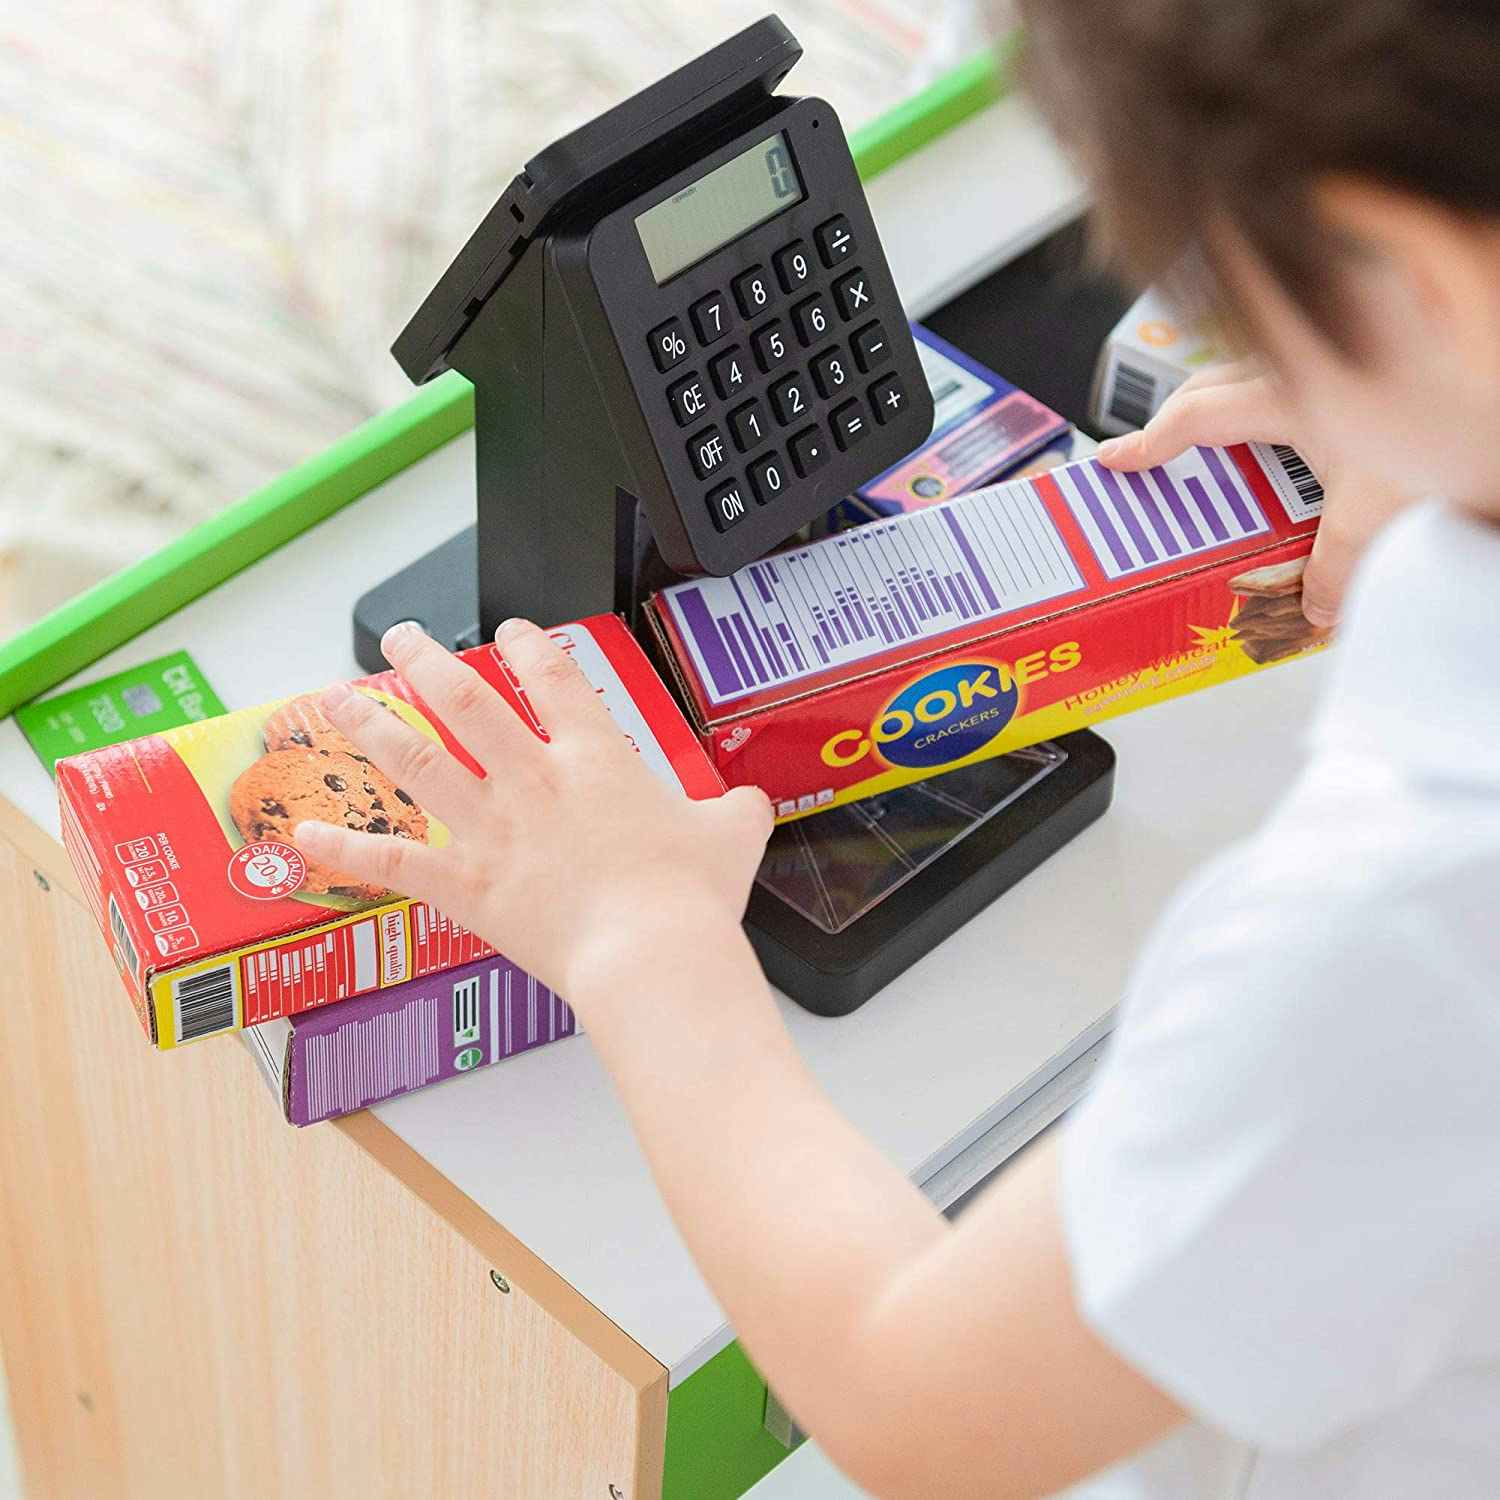 walmart-teamson-kids-cashier-austin-play-checkout-counter-2021